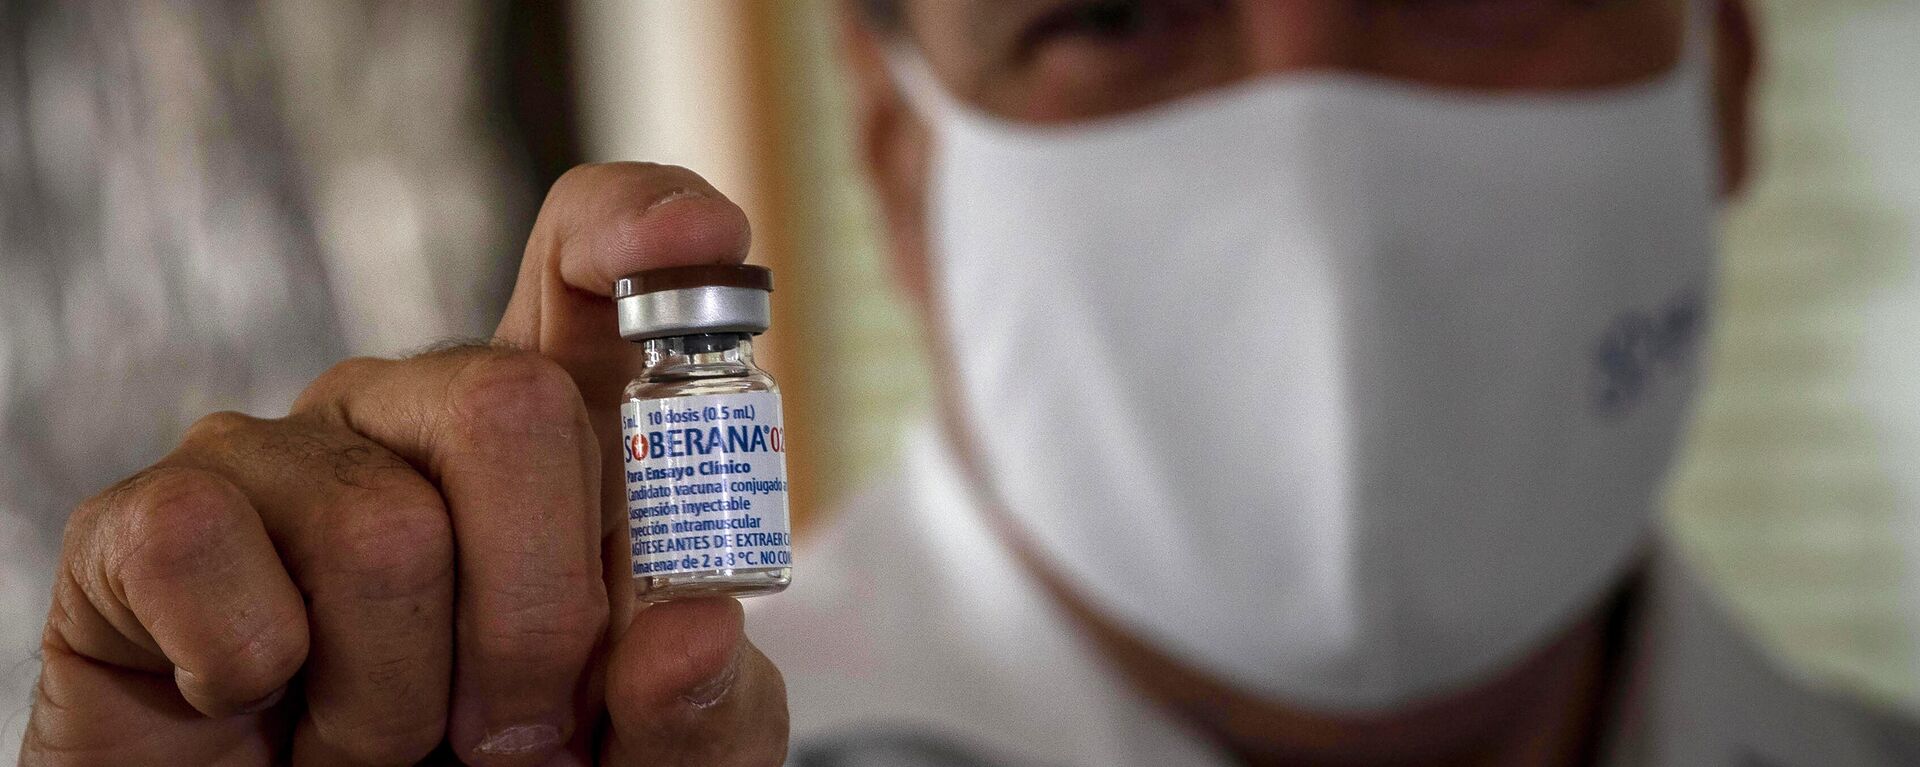 Un médico sostiene la vacuna cubana Soberana 02 contra COVID-19 - Sputnik Mundo, 1920, 04.03.2021